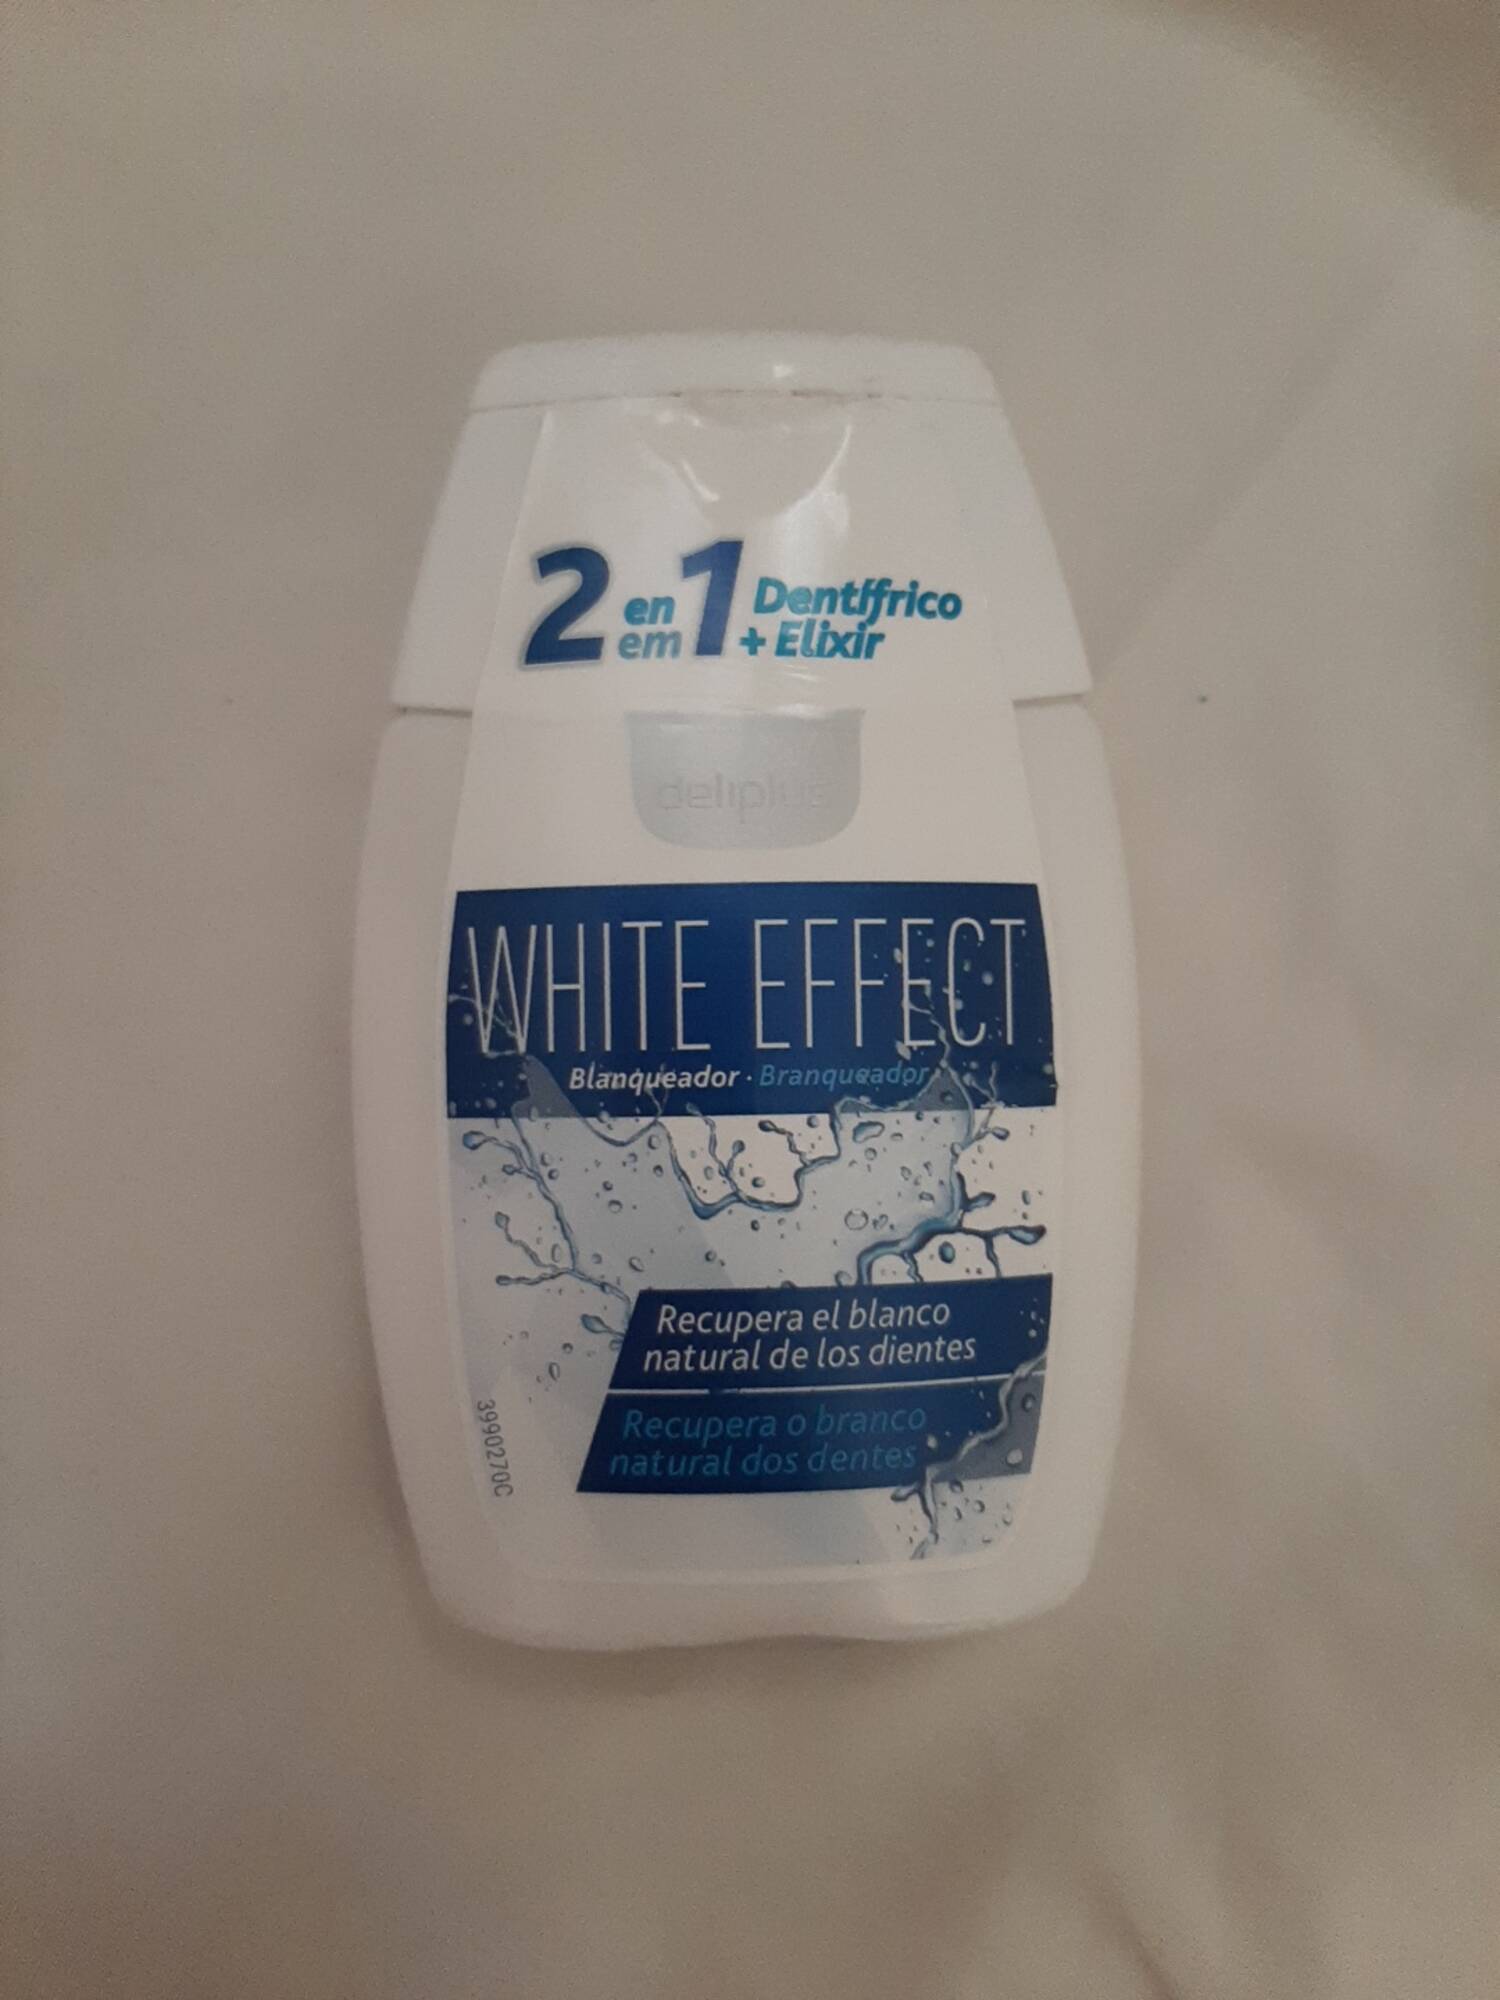 DELIPLUS - White effect - 2 en 1 Dentifrico + elixir